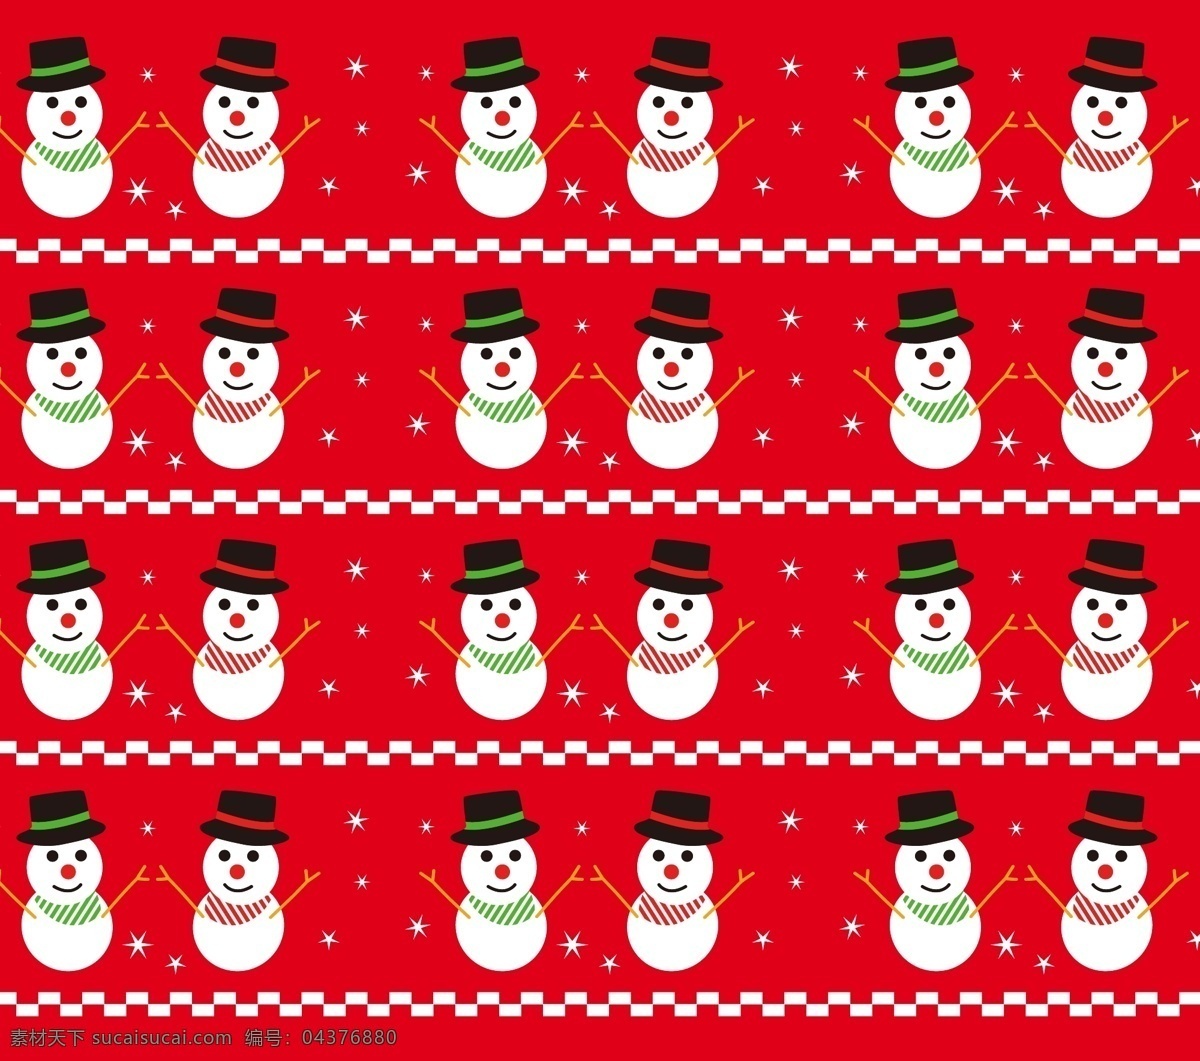 圣诞雪人 雪花 戴帽子的雪人 红背景 红底 数码印花 满版 矢量 无缝连接 底纹边框 背景底纹